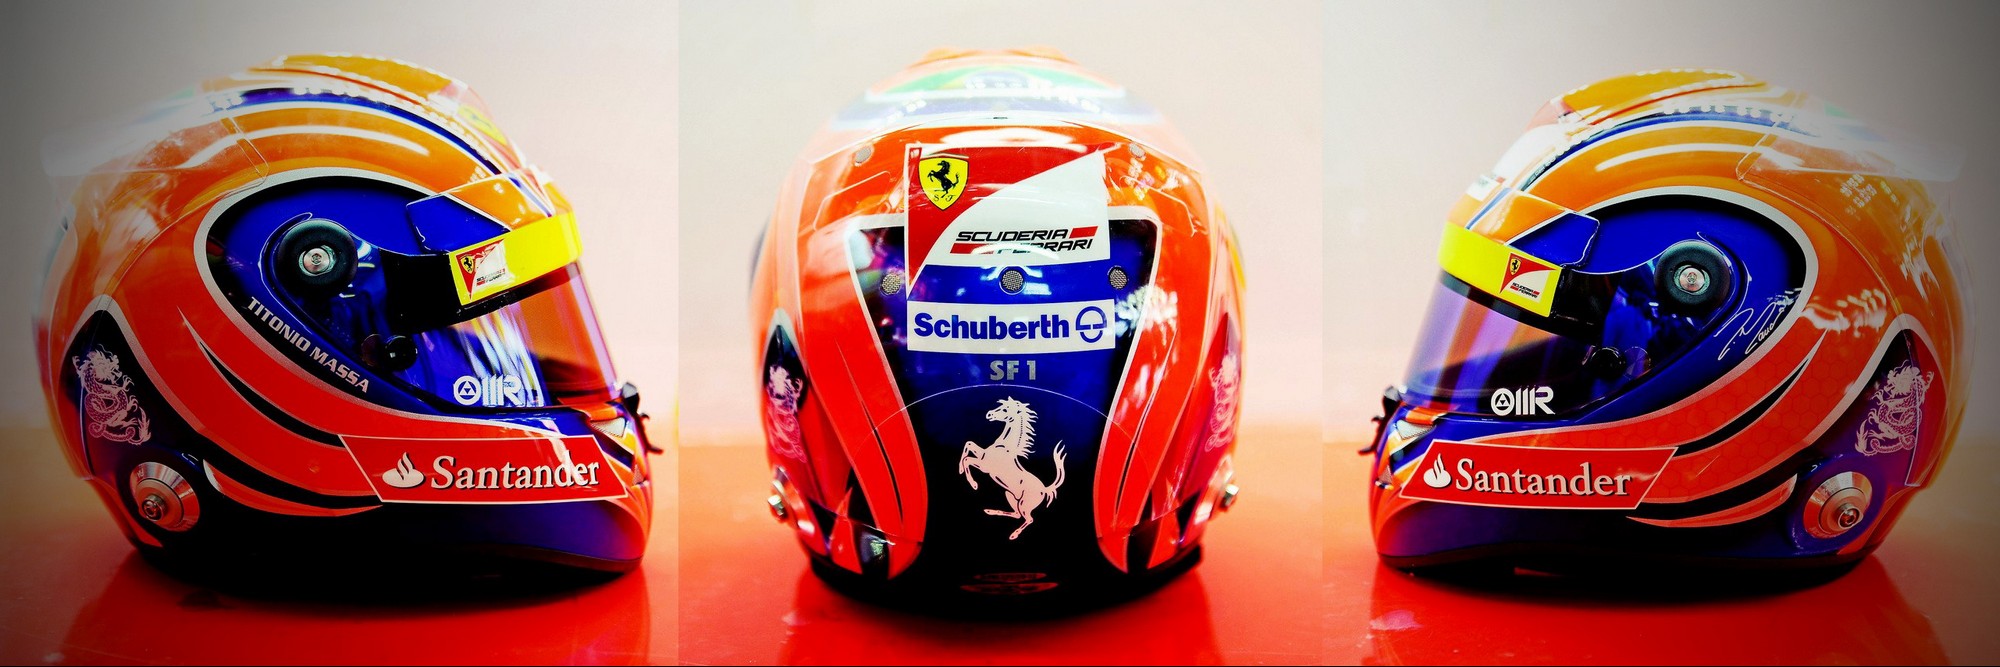 Шлем Фелипе Массы на Гран-При Бразилии 2012 | 2012 Brazilian Grand Prix helmet of Felipe Massa